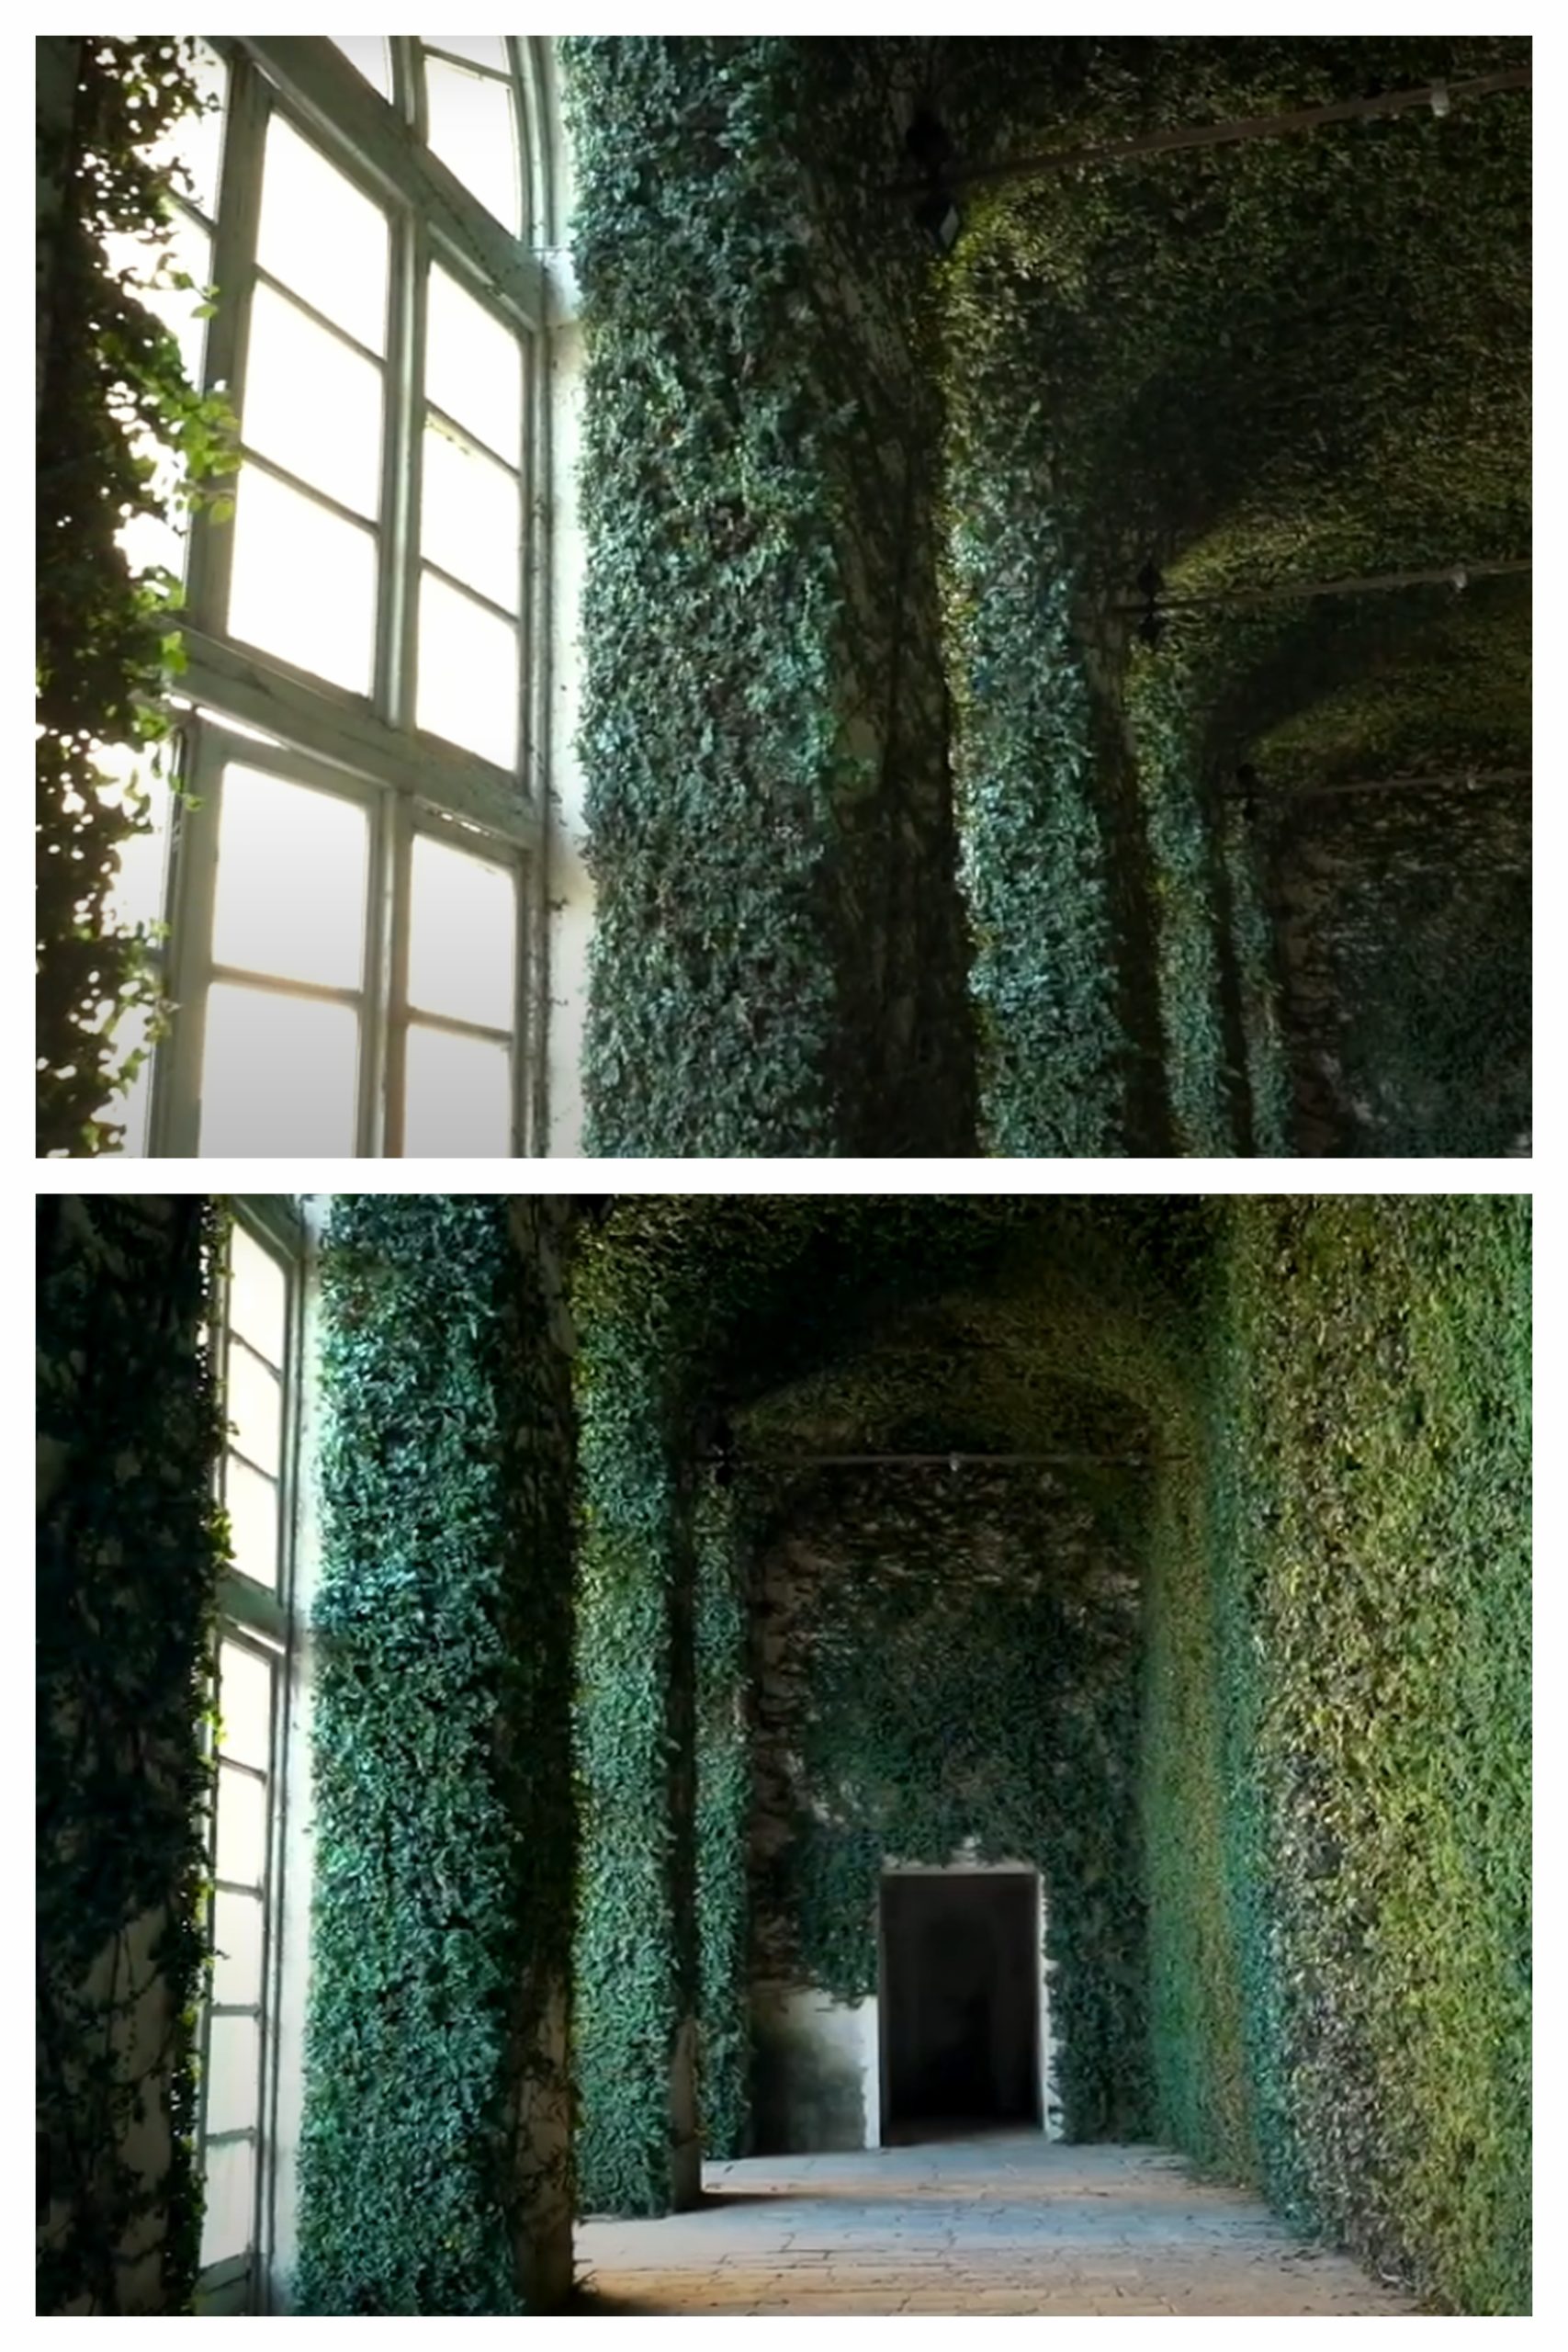 interior living wall goals at the Castello di Aglie near Turin